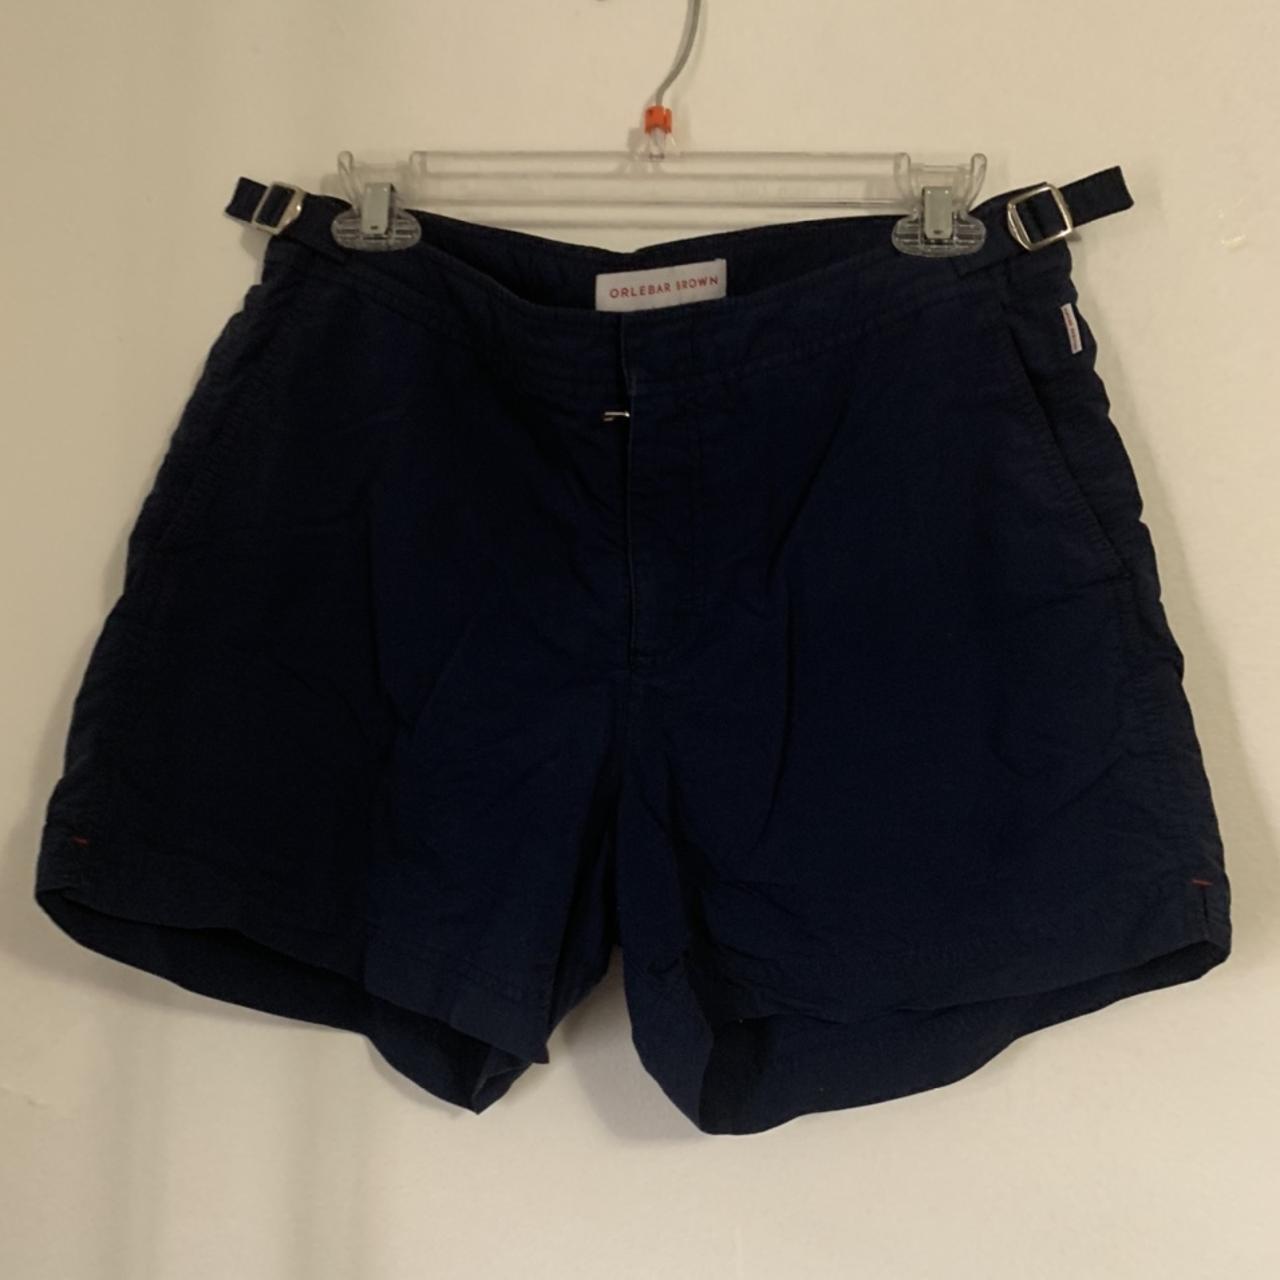 Orlebar Brown Men's Navy Shorts